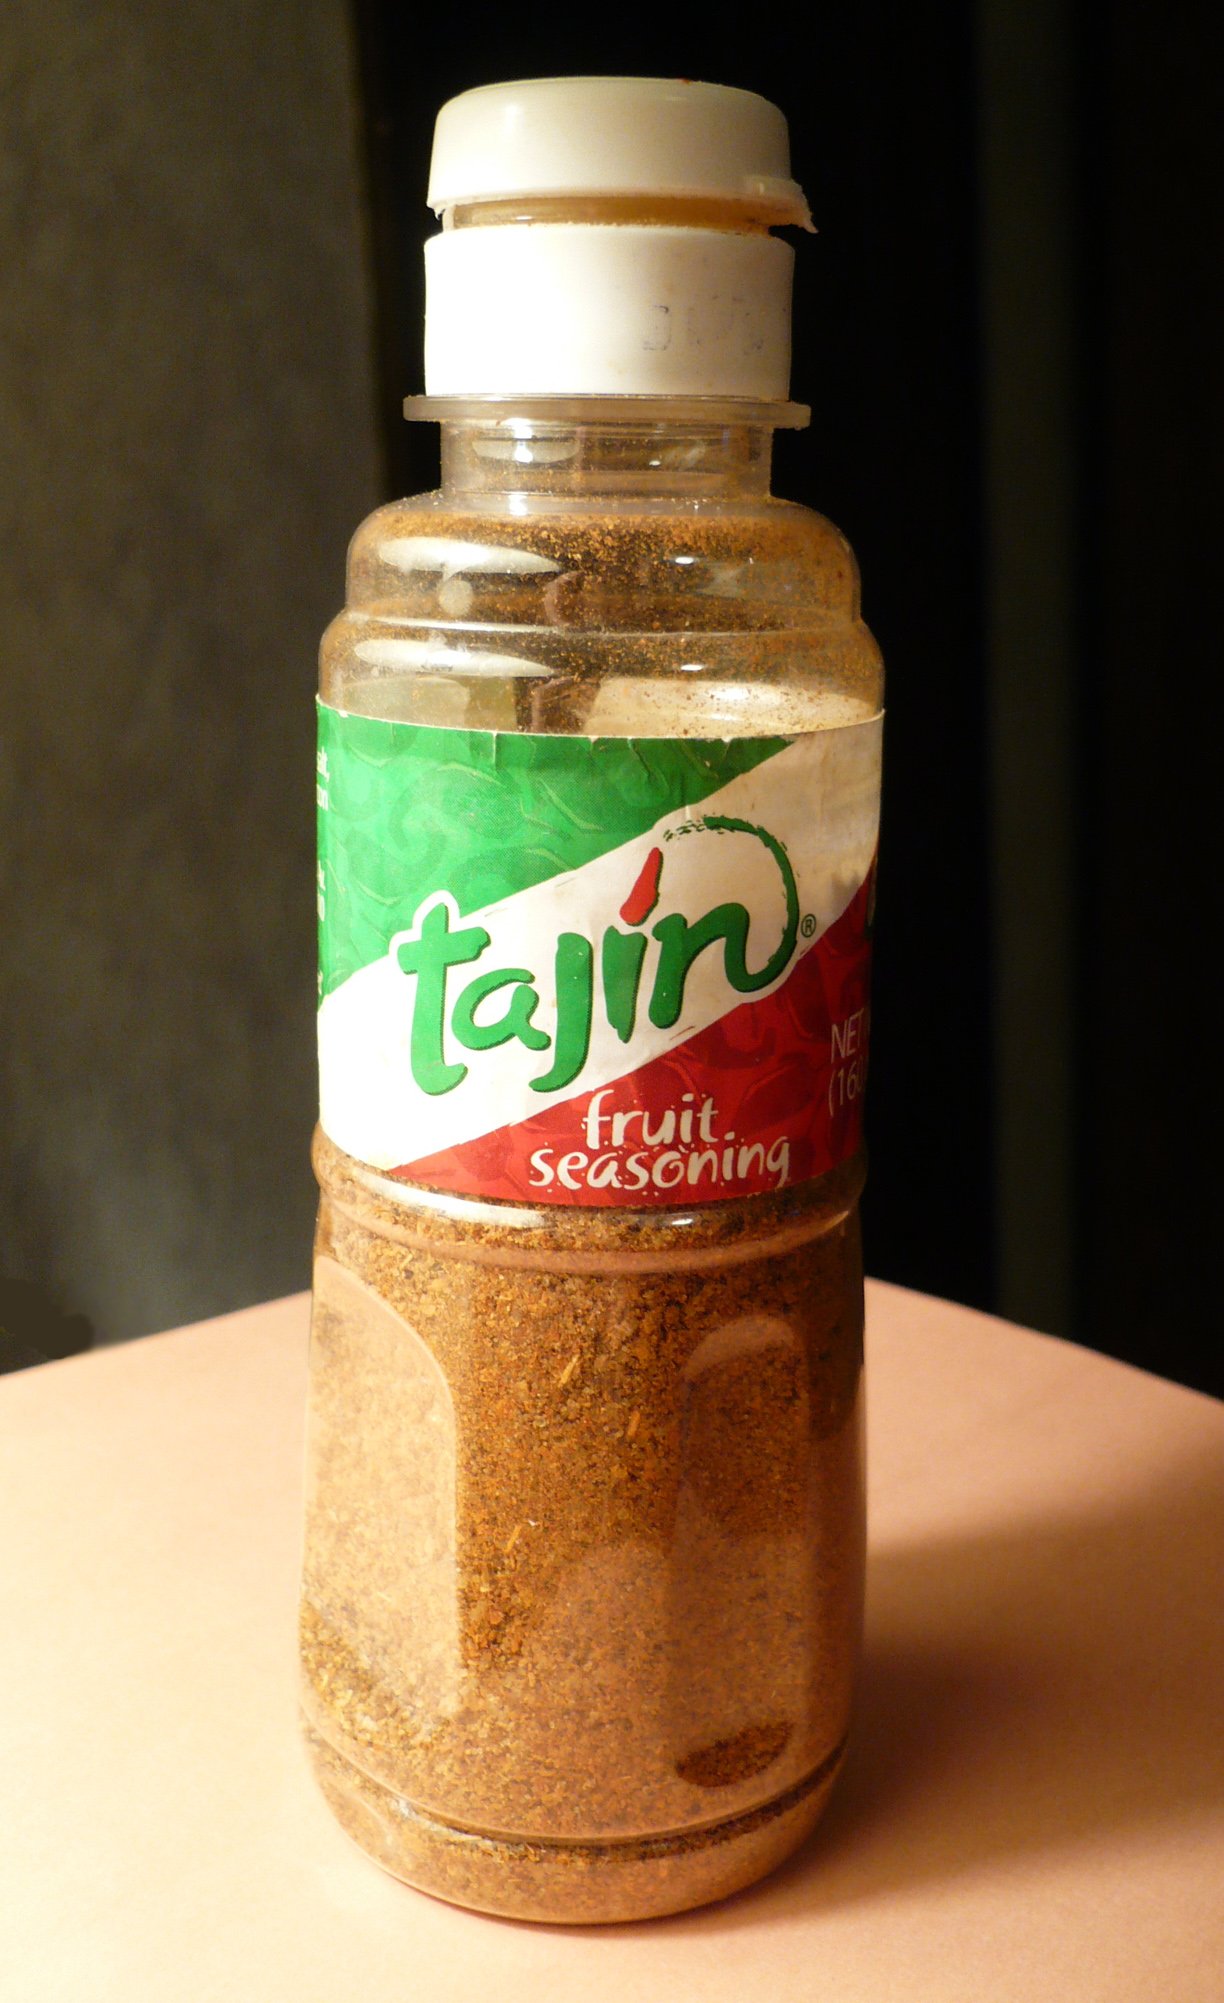 Tajín seasoning - Wikipedia